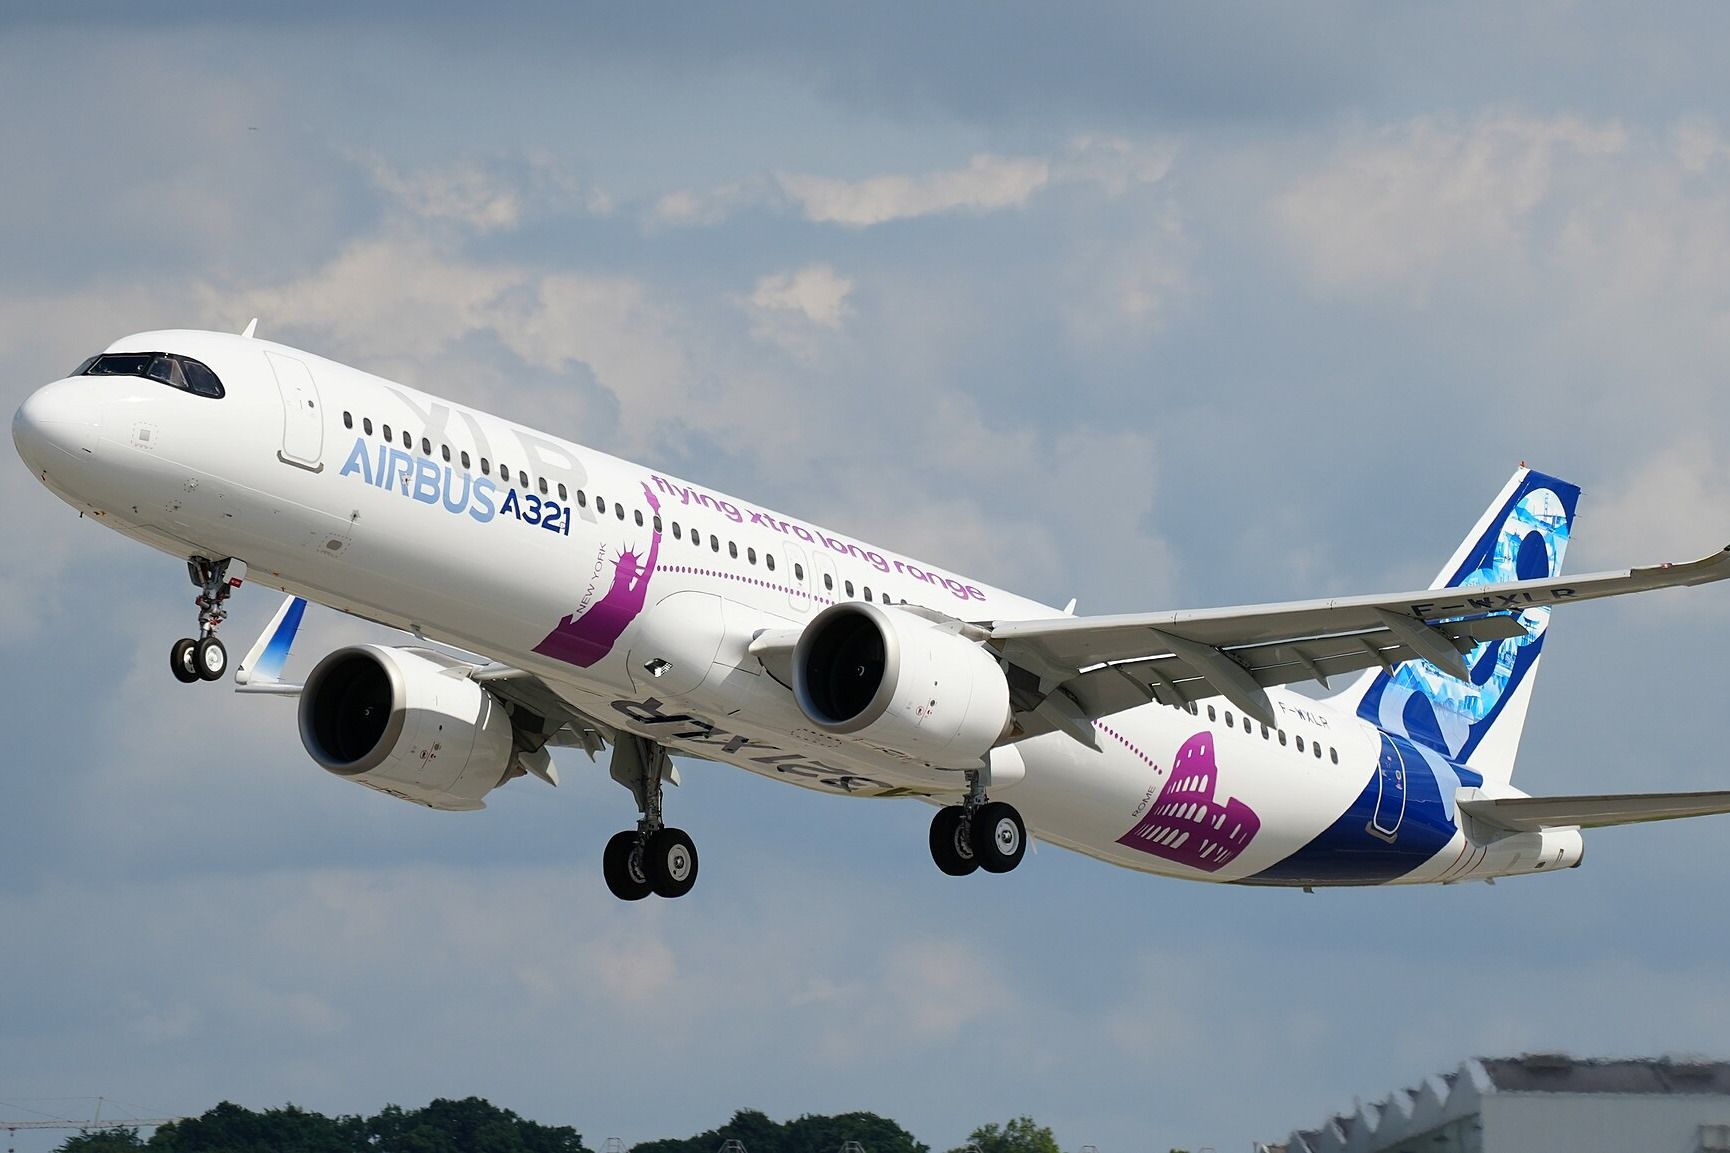 An Airbus A321XLR taking off